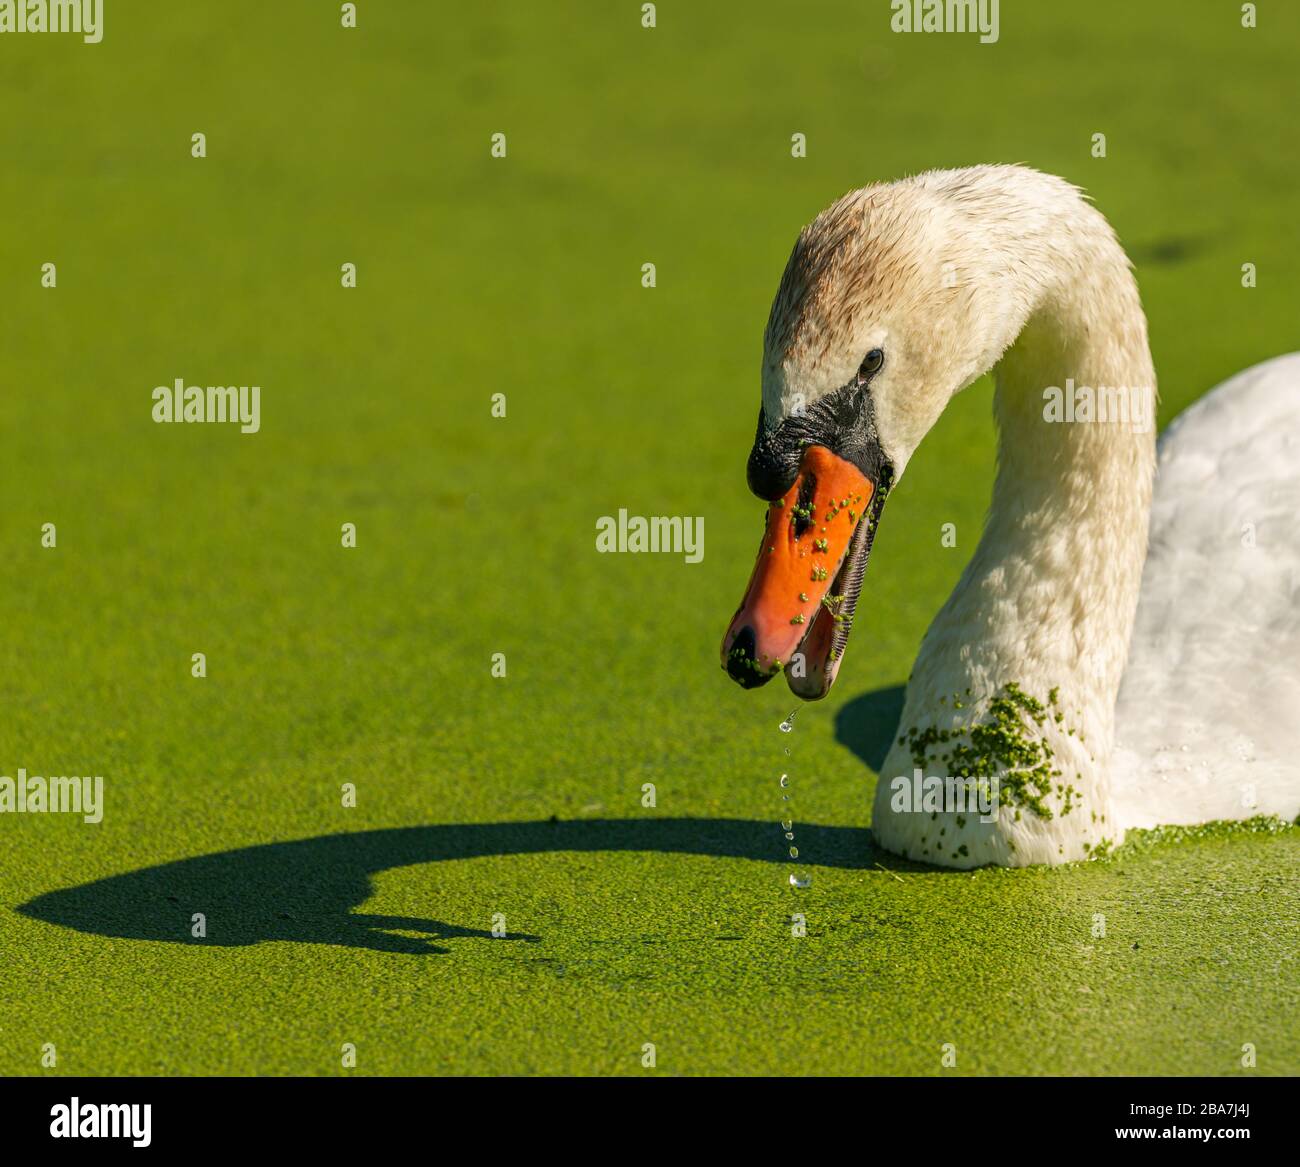 Weißer Schwanenvogel schwimmt im Grünwasser, wobei Wasser aus seinem Schnabel herabtropft, tierisch wild Stockfoto